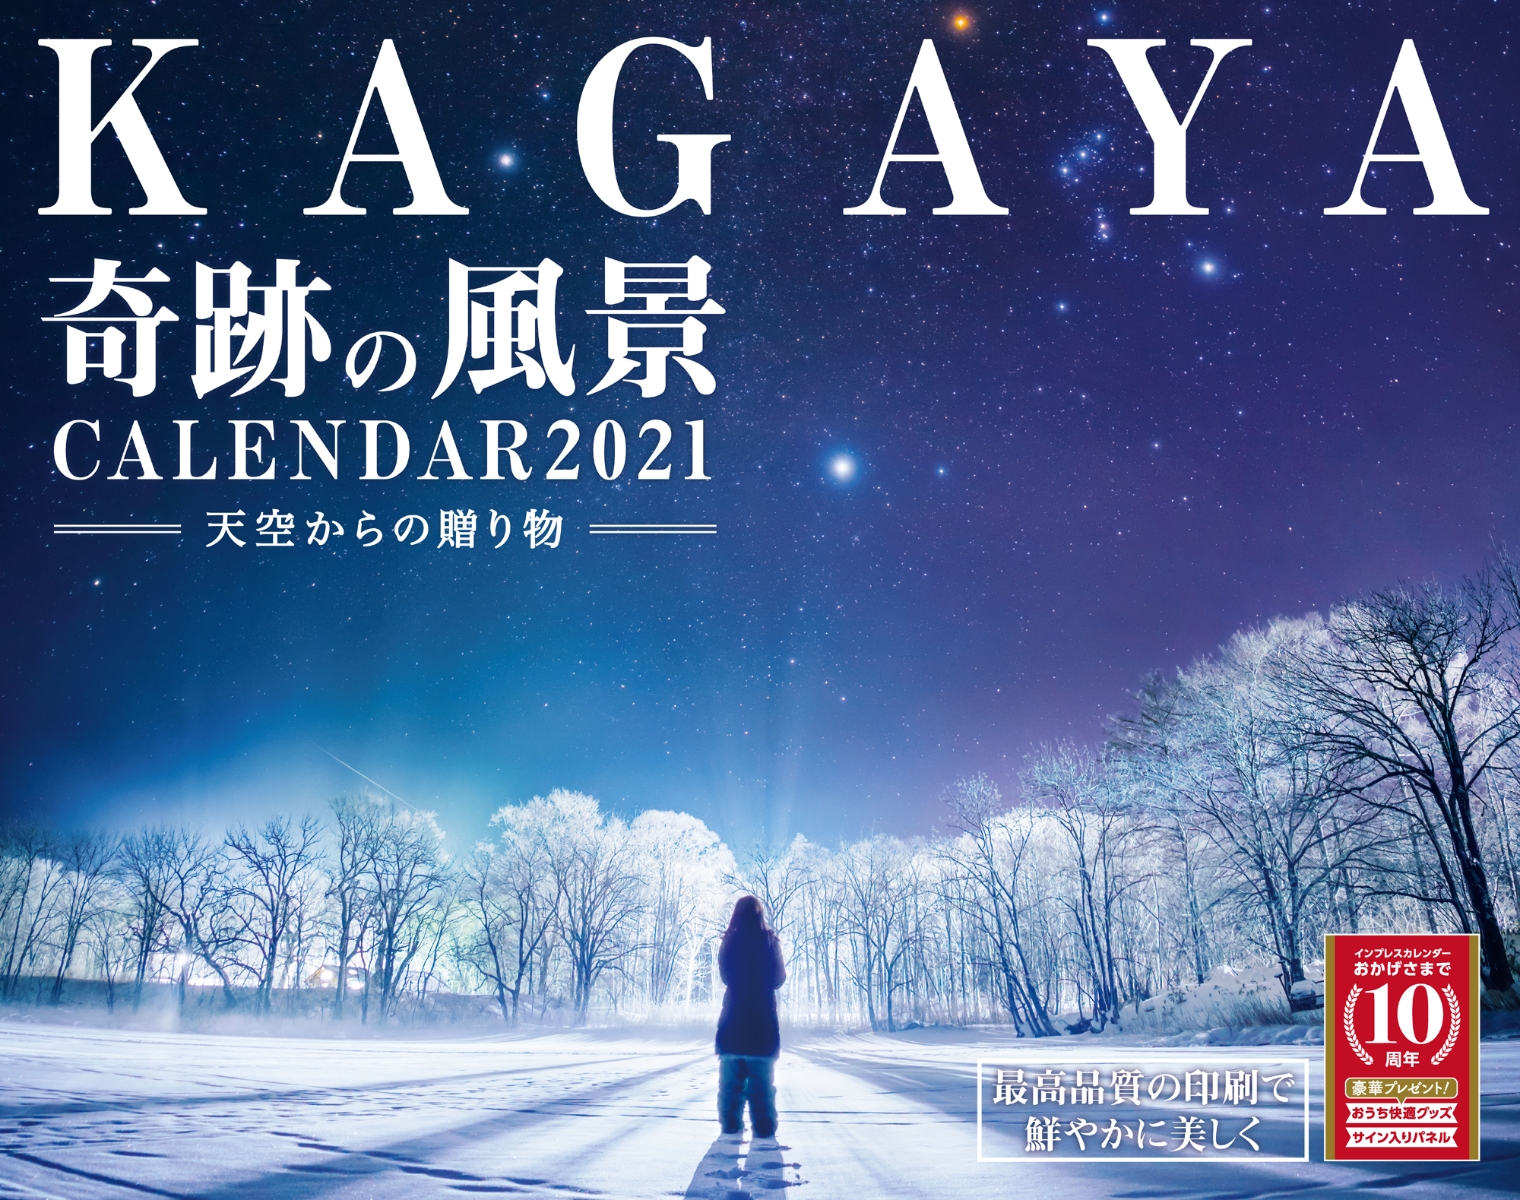 楽天ブックス Kagaya奇跡の風景calendar 21 天空からの贈り物 本